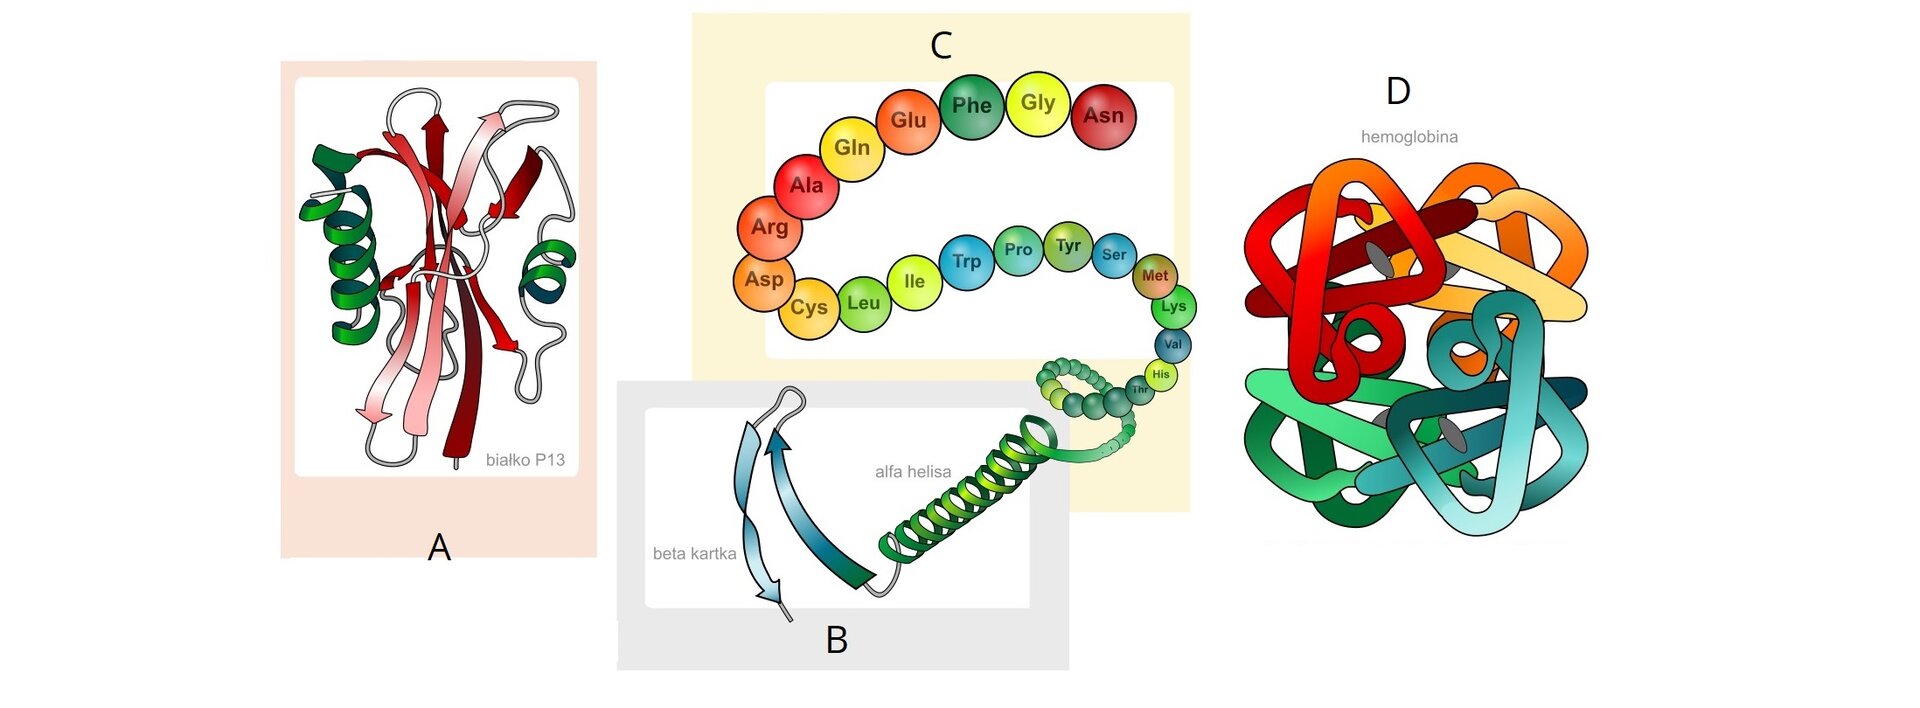 Na ilustracji składającej się z czterech zestawionych ze sobą rysunków przedstawiono cztery struktury białek. Pierwsza z nich, podpisana jako Struktura pierwszorzędowa, została ukazana na jasnopomarańczowym tle jako łańcuch różnokolorowych kulek reprezentujących aminokwasy z oznaczeniami literowymi poszczególnych aminokwasów: Asn, Gly, Phe, Glu, Gln, Ala, Arg, Asp, Cys, Leu, Ile, Trp, Pro, Tyr, Ser, Met, Lys, Val, His, Phe. Łańcuch przechodzi w strukturę drugorzędową, znajdującą się na ilustracji poniżej, podpisanej jako Struktura drugorzędowa. Jest ona umieszczona na jasnoniebieskim tle i została zobrazowana na dwa sposoby: jako zielona spiralna alfa helisa oraz jako niebieska zagięta beta kartka zwana także beta harmonijką. Z prawej strony obu grafik umieszczono ilustrację opisaną jako Struktura trzeciorzędowa. Znajduje się ona na jasnoróżowym tle i stanowi połączenie dwóch fragmentów zielonej alfa helisy i dwóch fragmentów beta kartki: różowego i czerwonego. W prawym dolnym rogu rysunku znajduje się podpis: Białko P13. Najbardziej z prawej strony, na białym tle przedstawiono Strukturę czwartorzędową. Jest ona połączeniem podjednostek trzeciorzędowych — w tym wypadku, na przykładzie hemoglobiny, są to cztery podjednostki oznaczone kolorami: czerwonym, pomarańczowym, zielonym i niebieskim. Tworzą one strukturę przypominającą plątaninę nici.